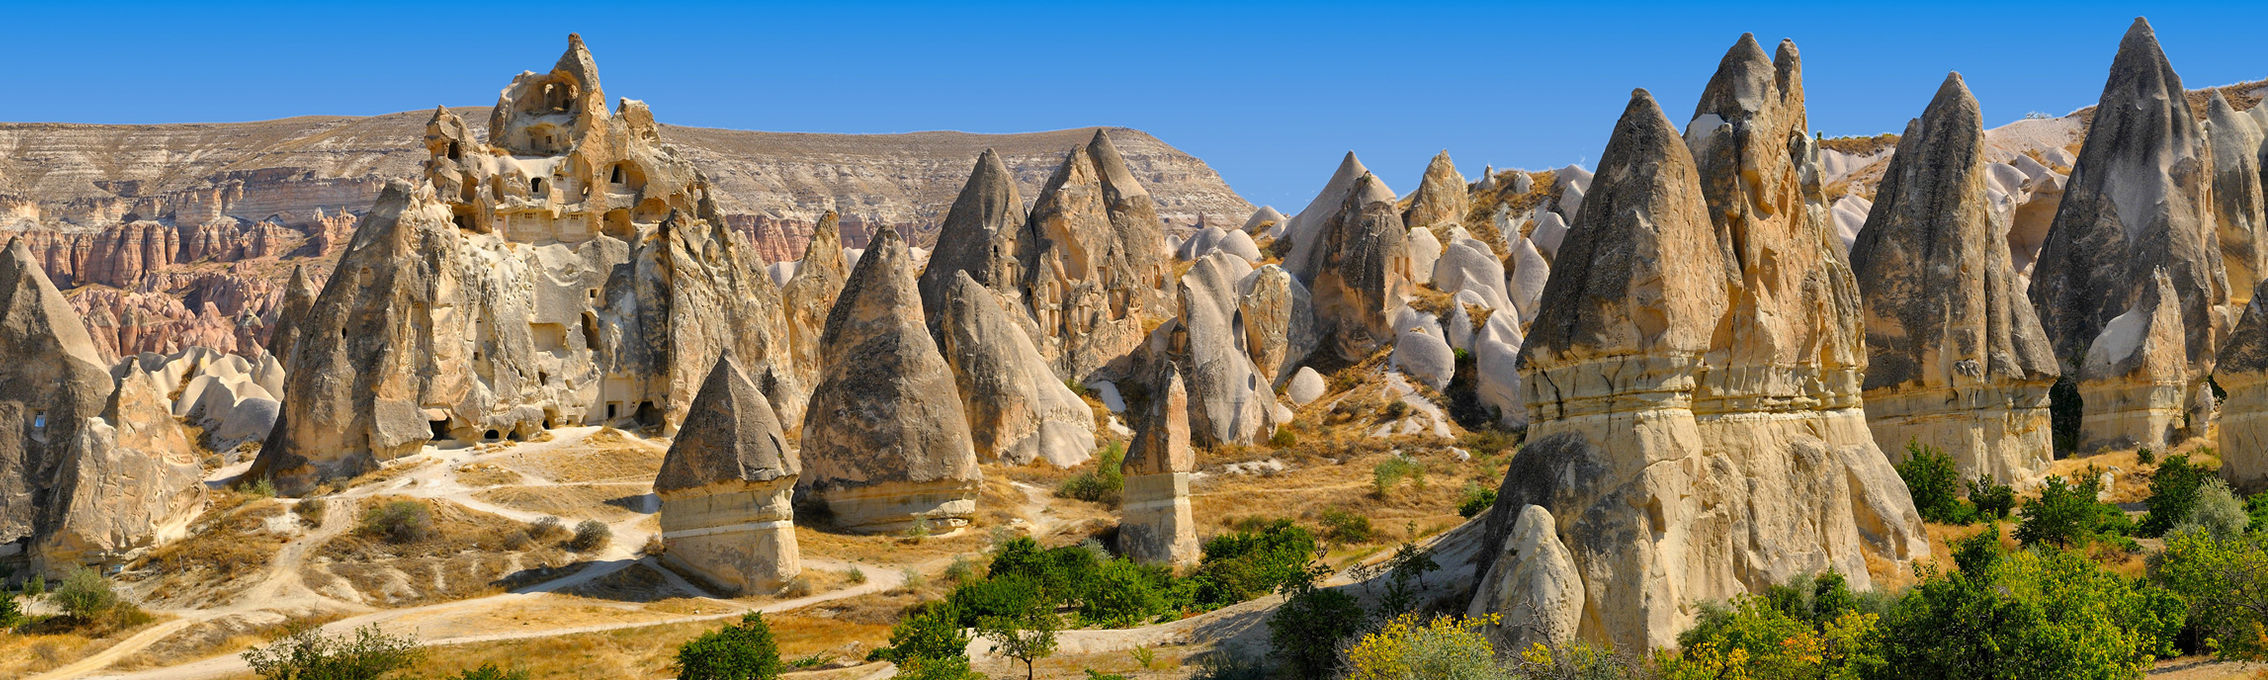 sites touristiques turquie